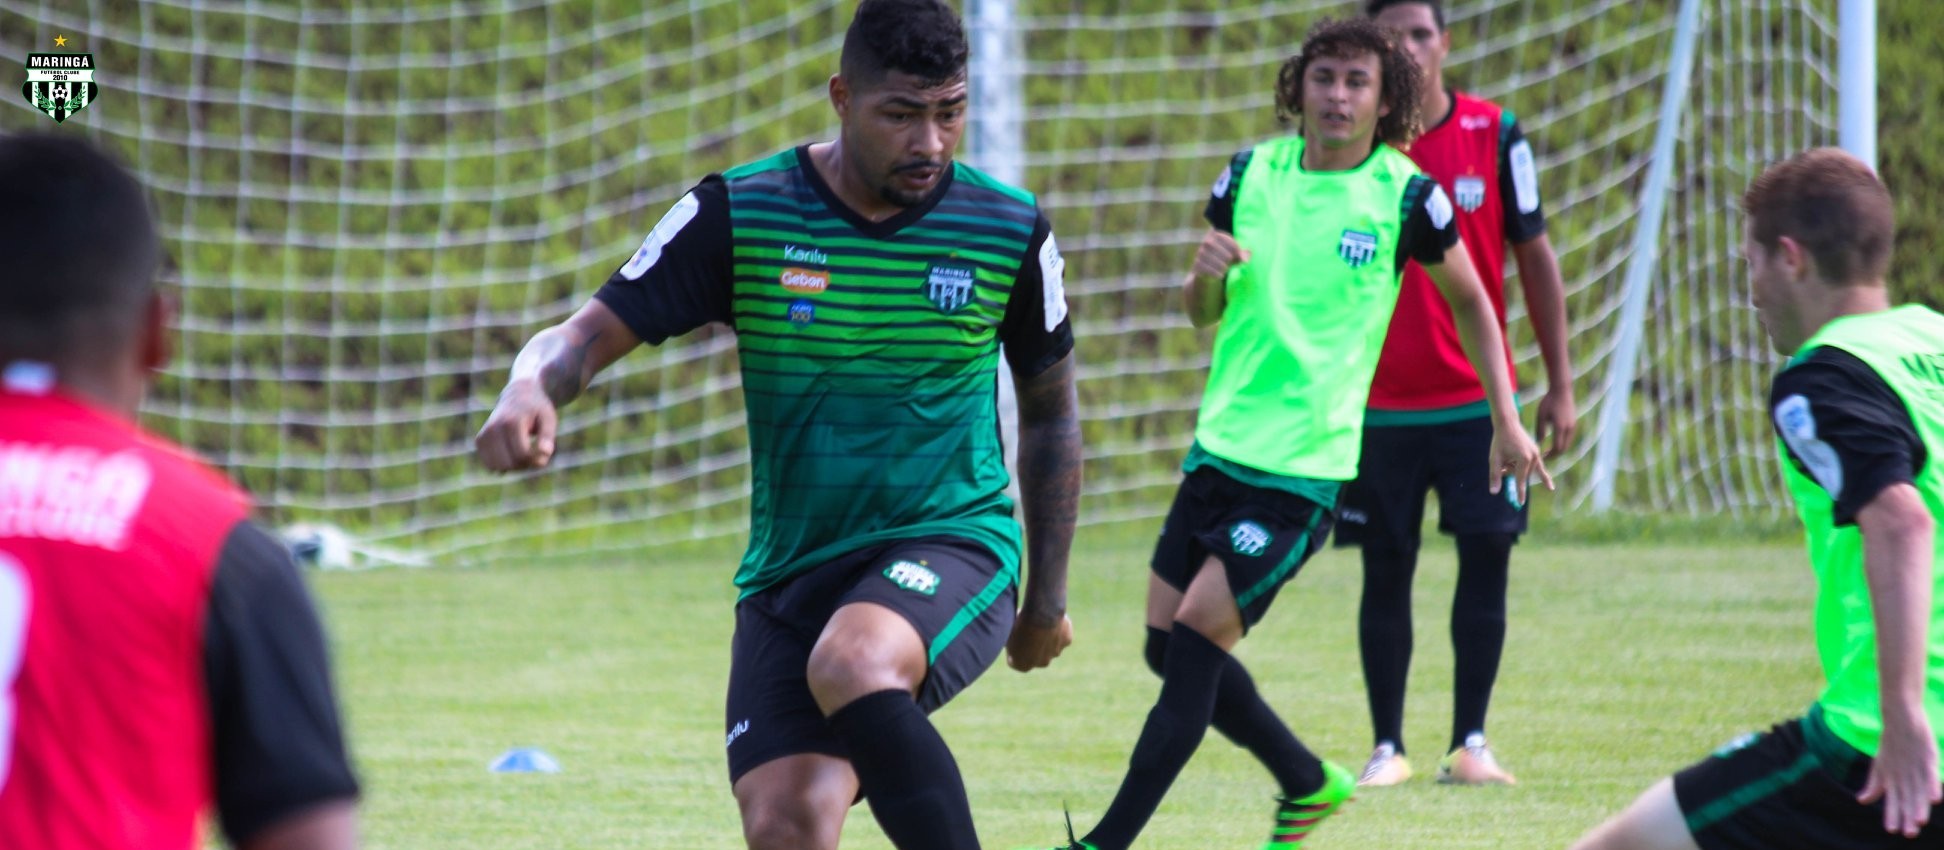 Maringá FC e Cianorte fazem amistoso que termina sem gols